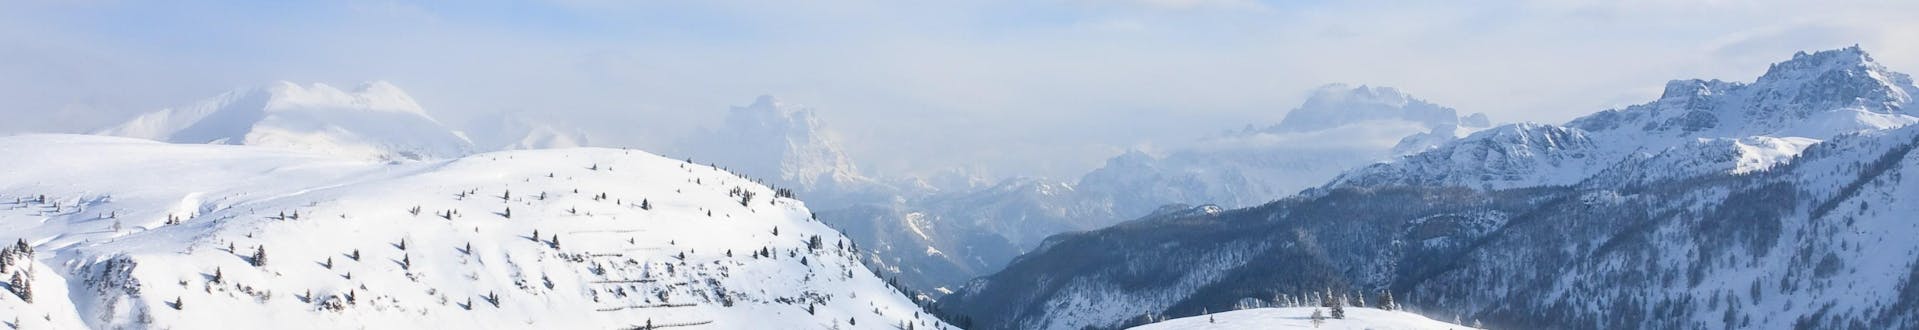 Piste da sci vicino a St. Christina dove è possibile prenotare lezioni di sci.